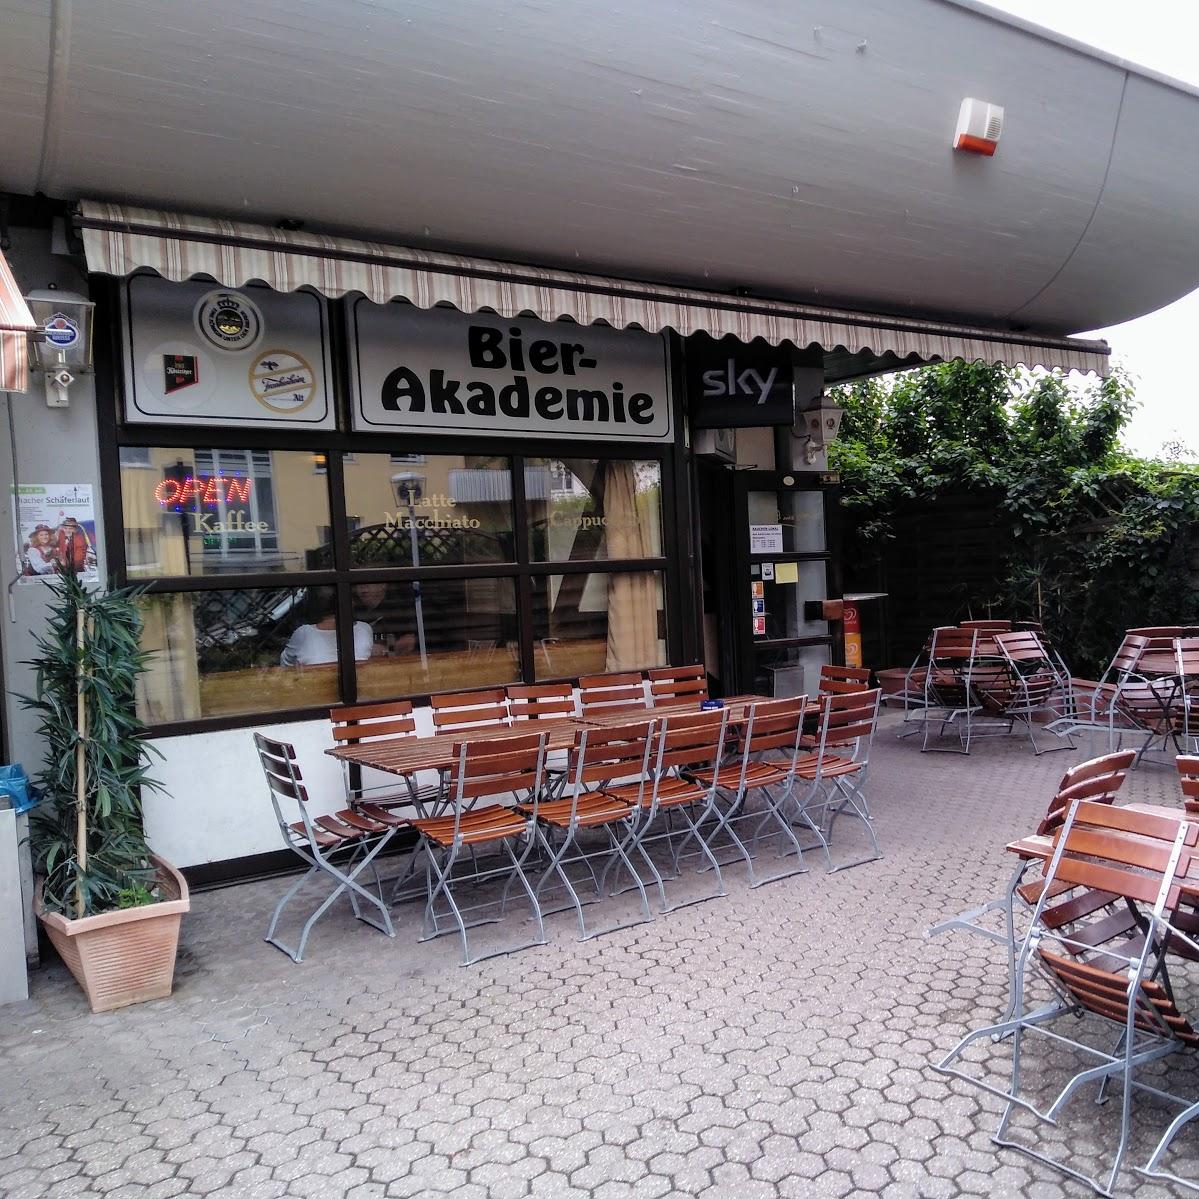 Restaurant "Bierakademie" in Mössingen